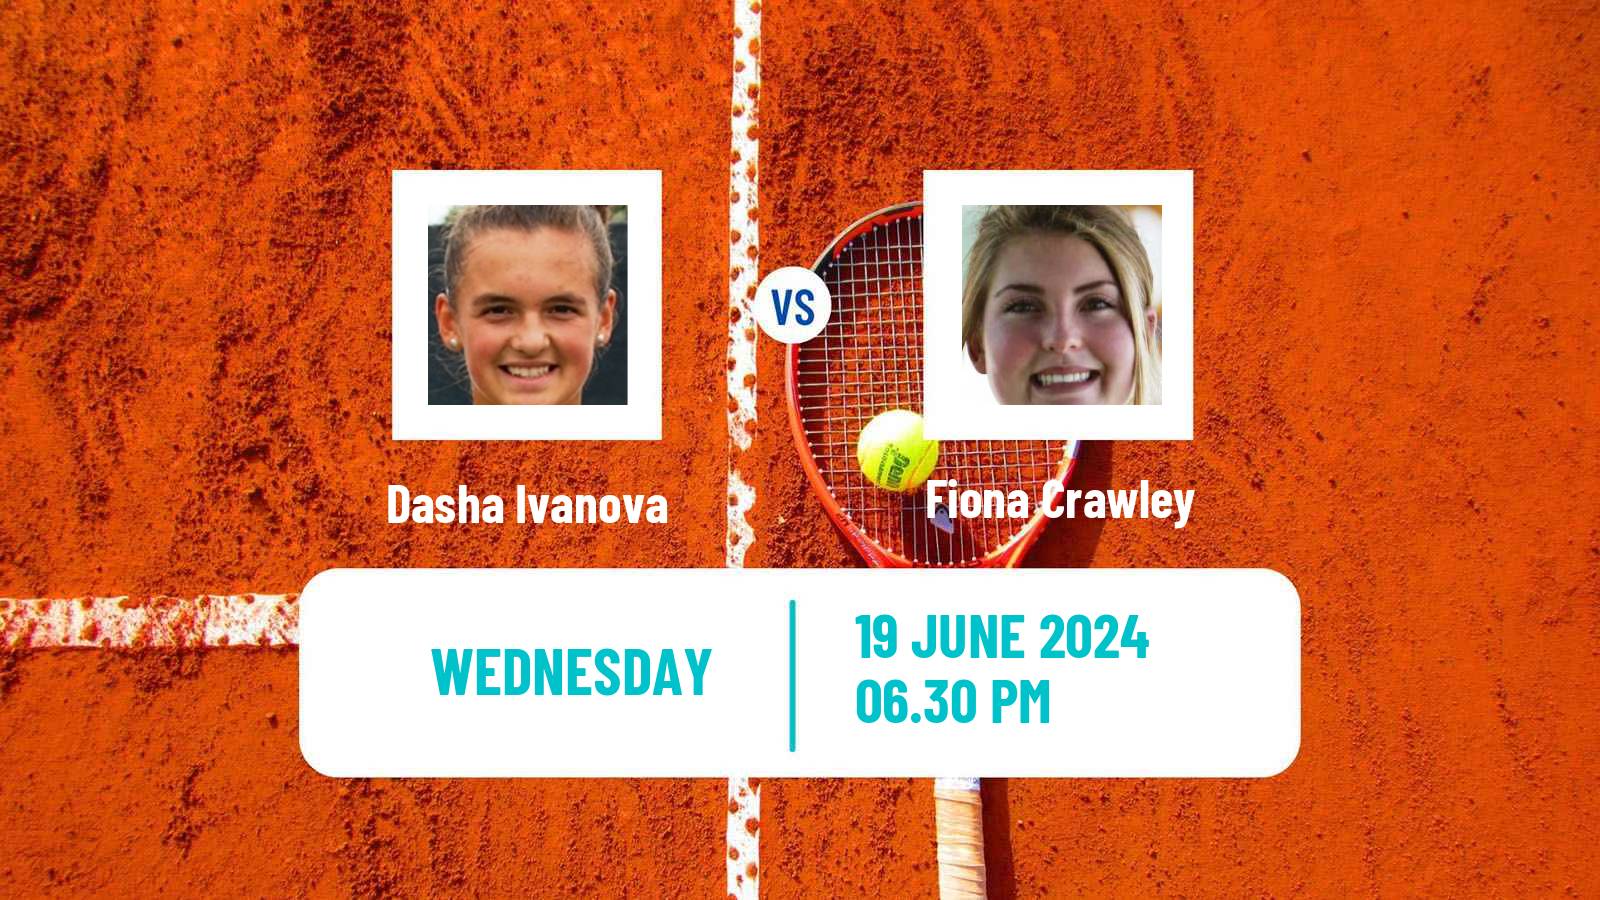 Tennis ITF W35 Wichita Ks Women Dasha Ivanova - Fiona Crawley